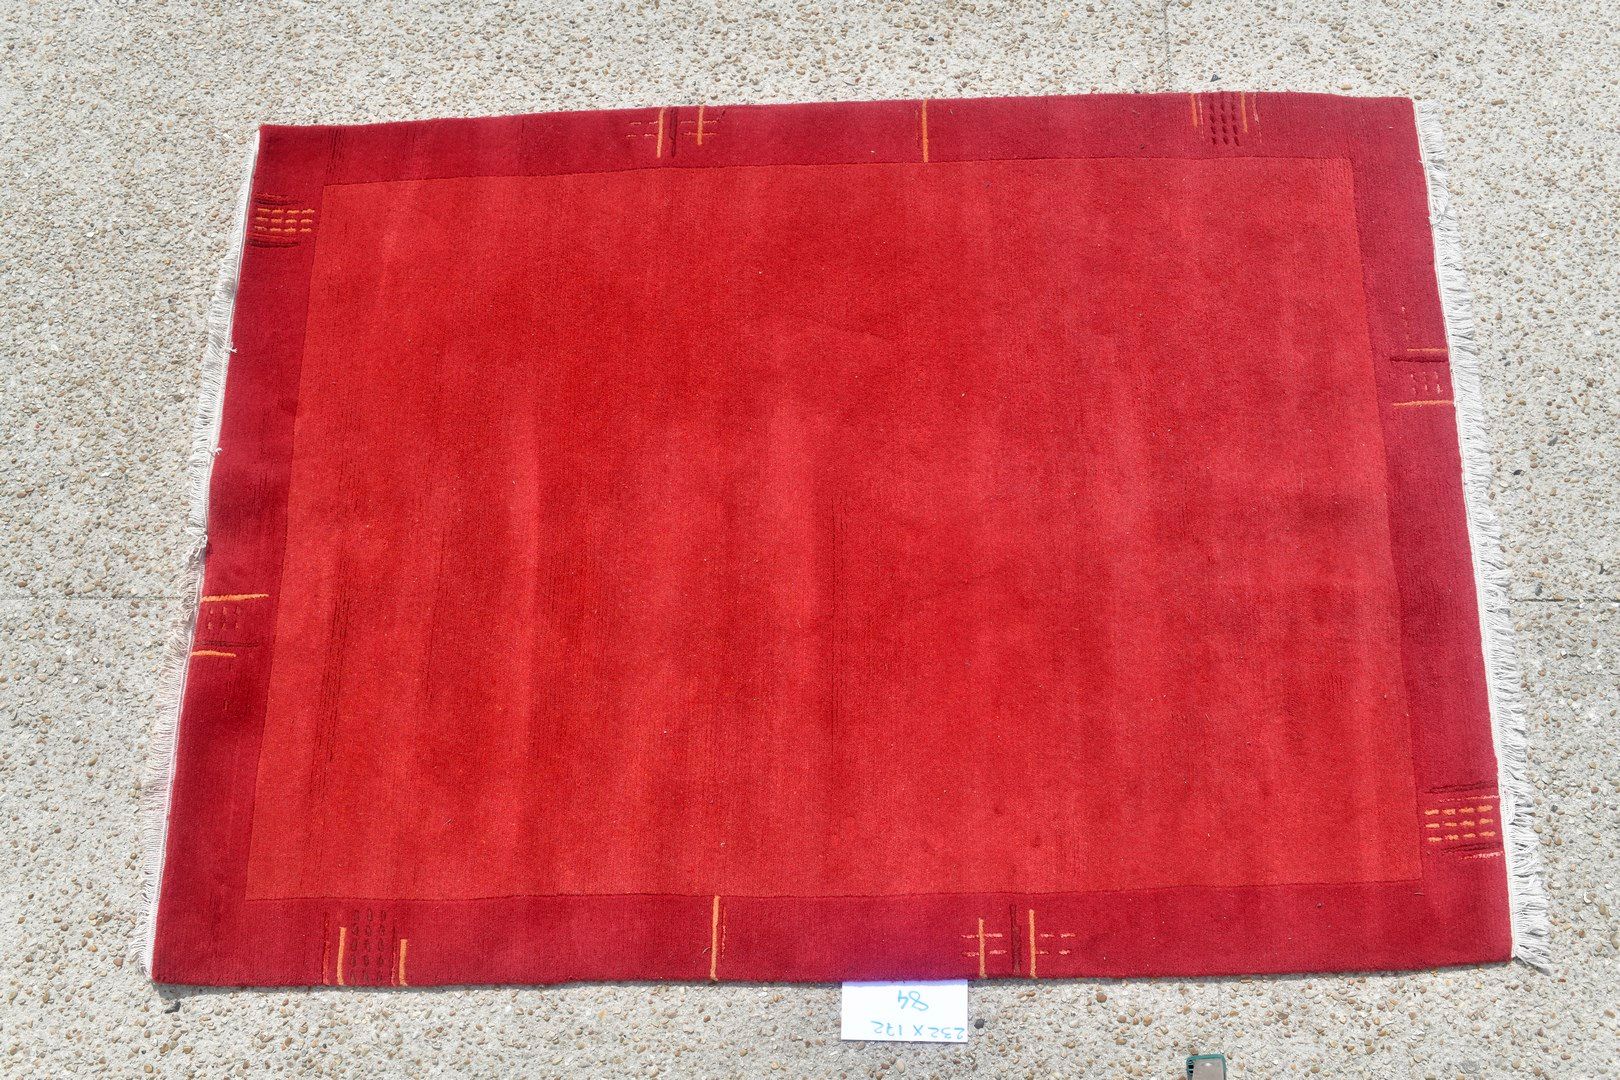 Null 尼泊尔语，1980年。

羊毛天鹅绒，棉质基础。

纯粹的红宝石领域。

状况良好。

232x172厘米